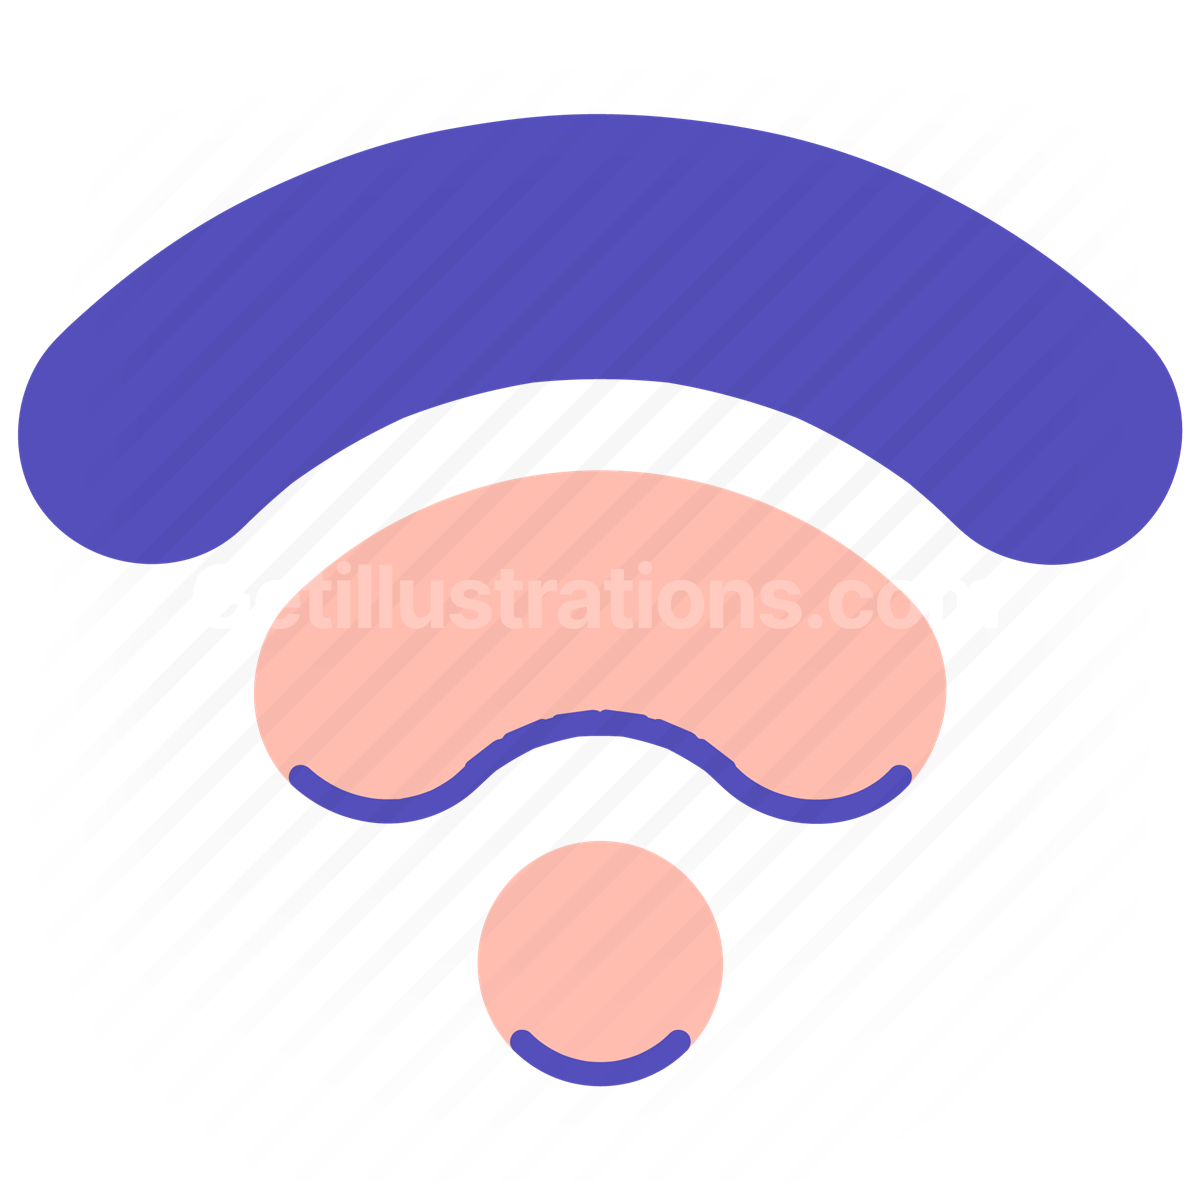 App Icons illustration